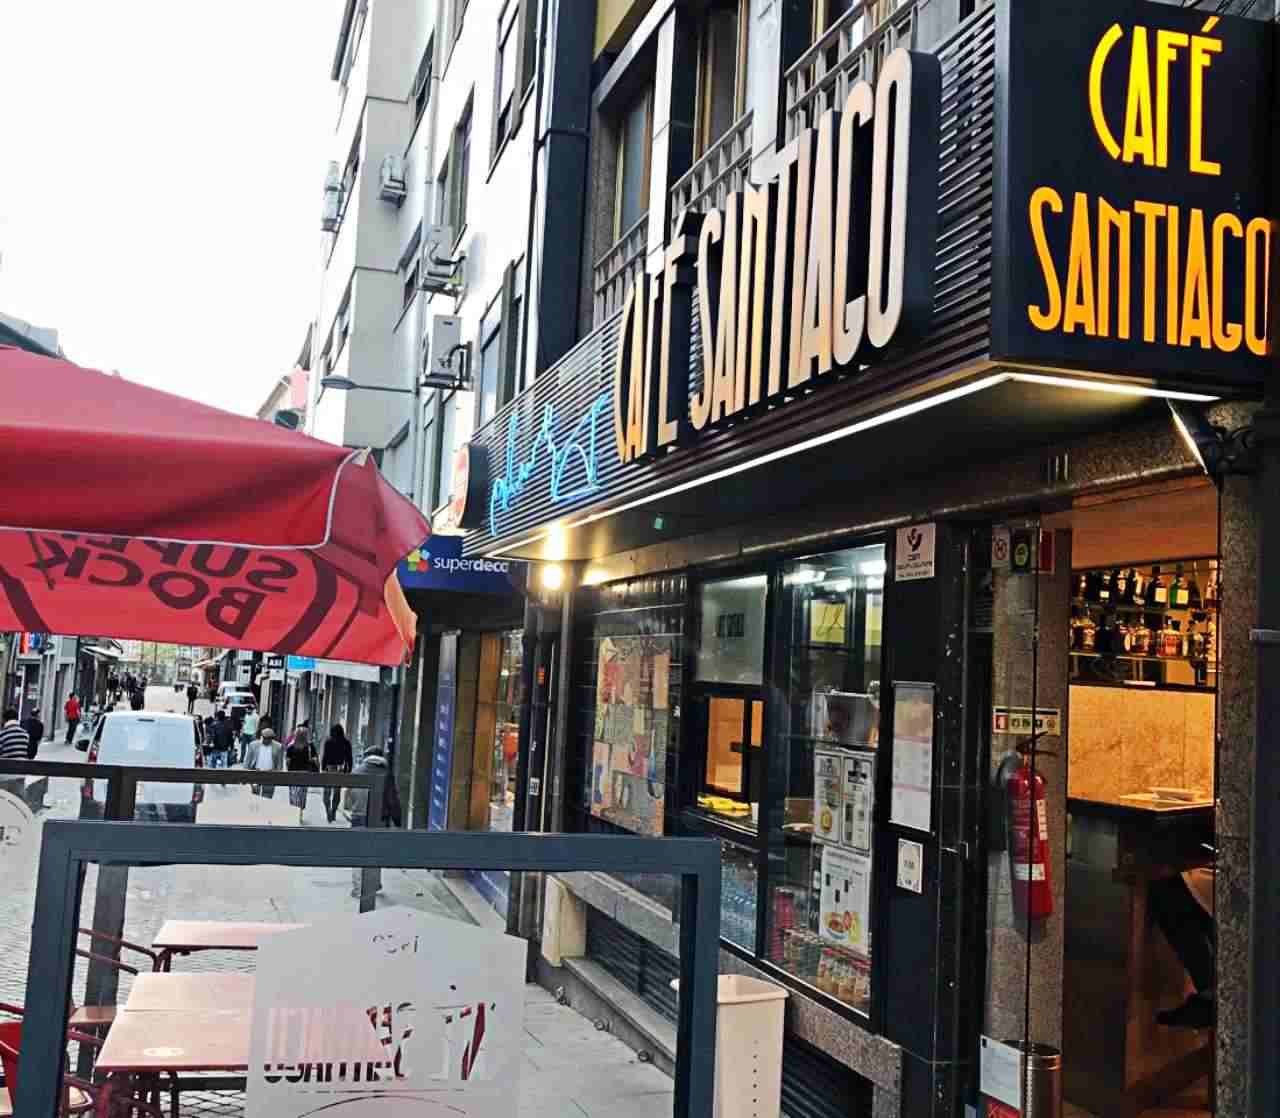 Café Santiago - O que fazer em Porto Portugal